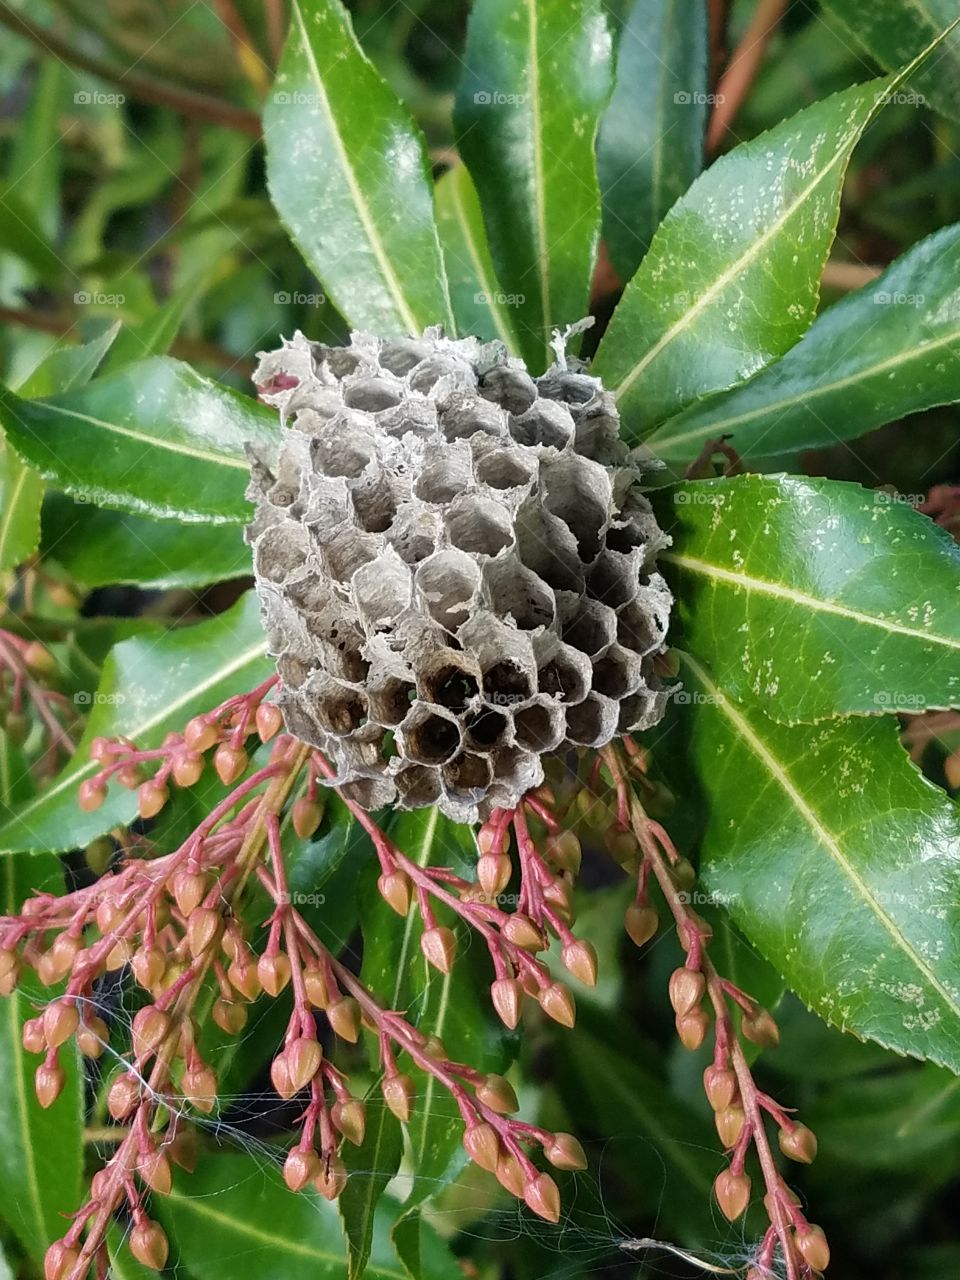 wasp nest flower